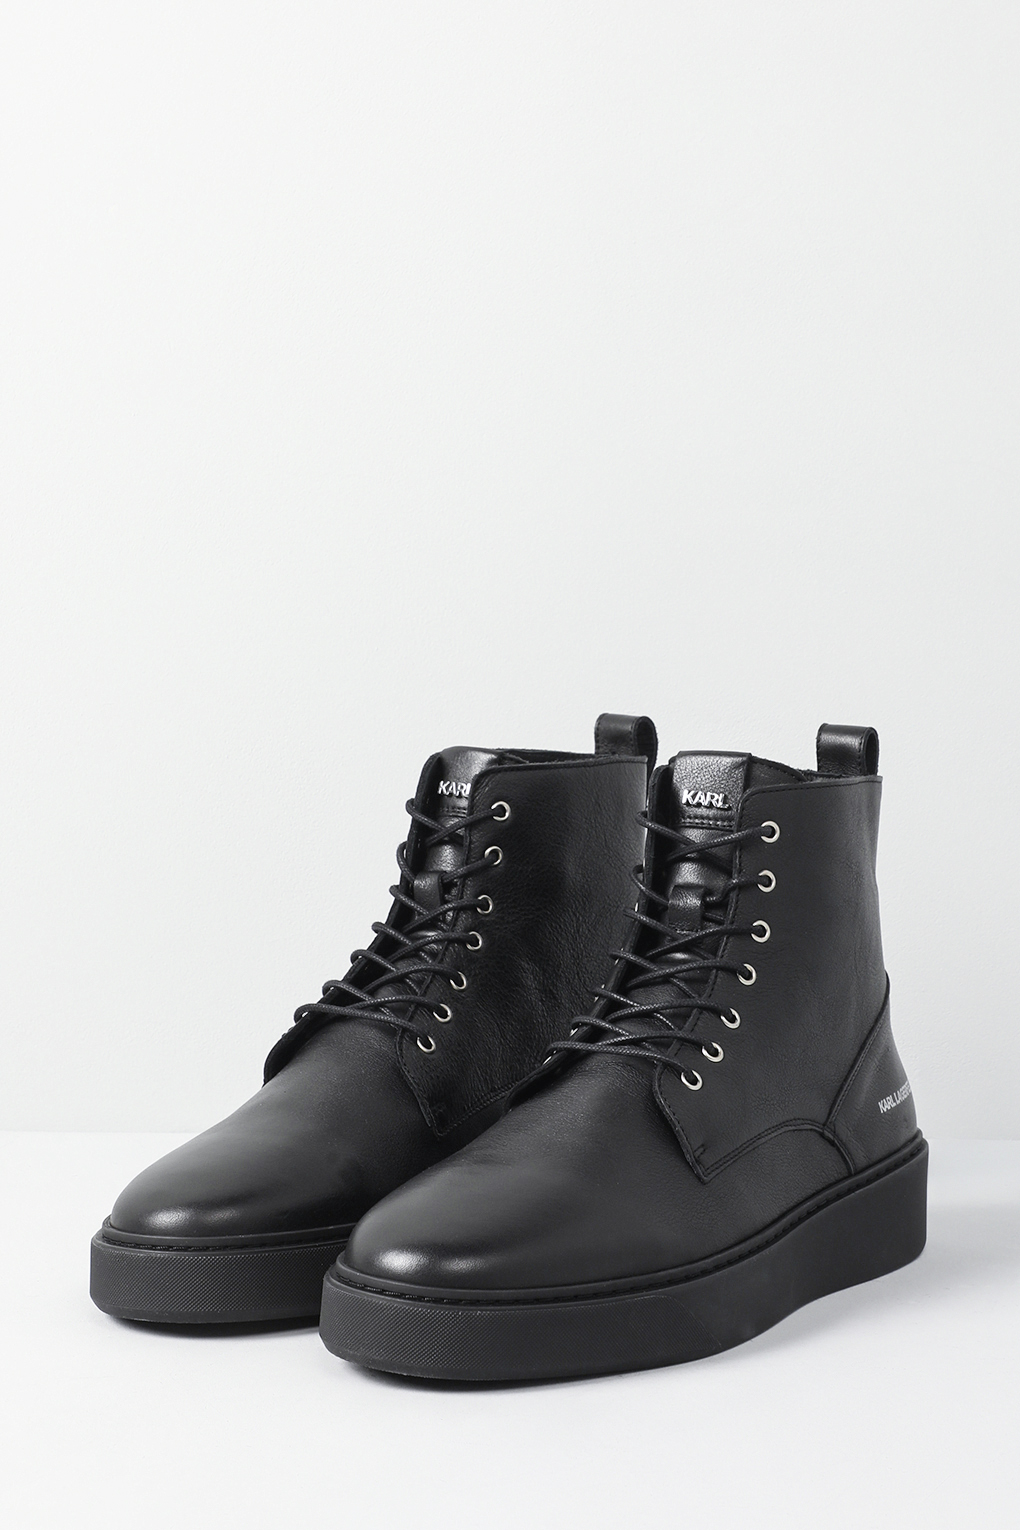 Ботинки мужские Karl Lagerfeld 855003-533470 черные 43 EU